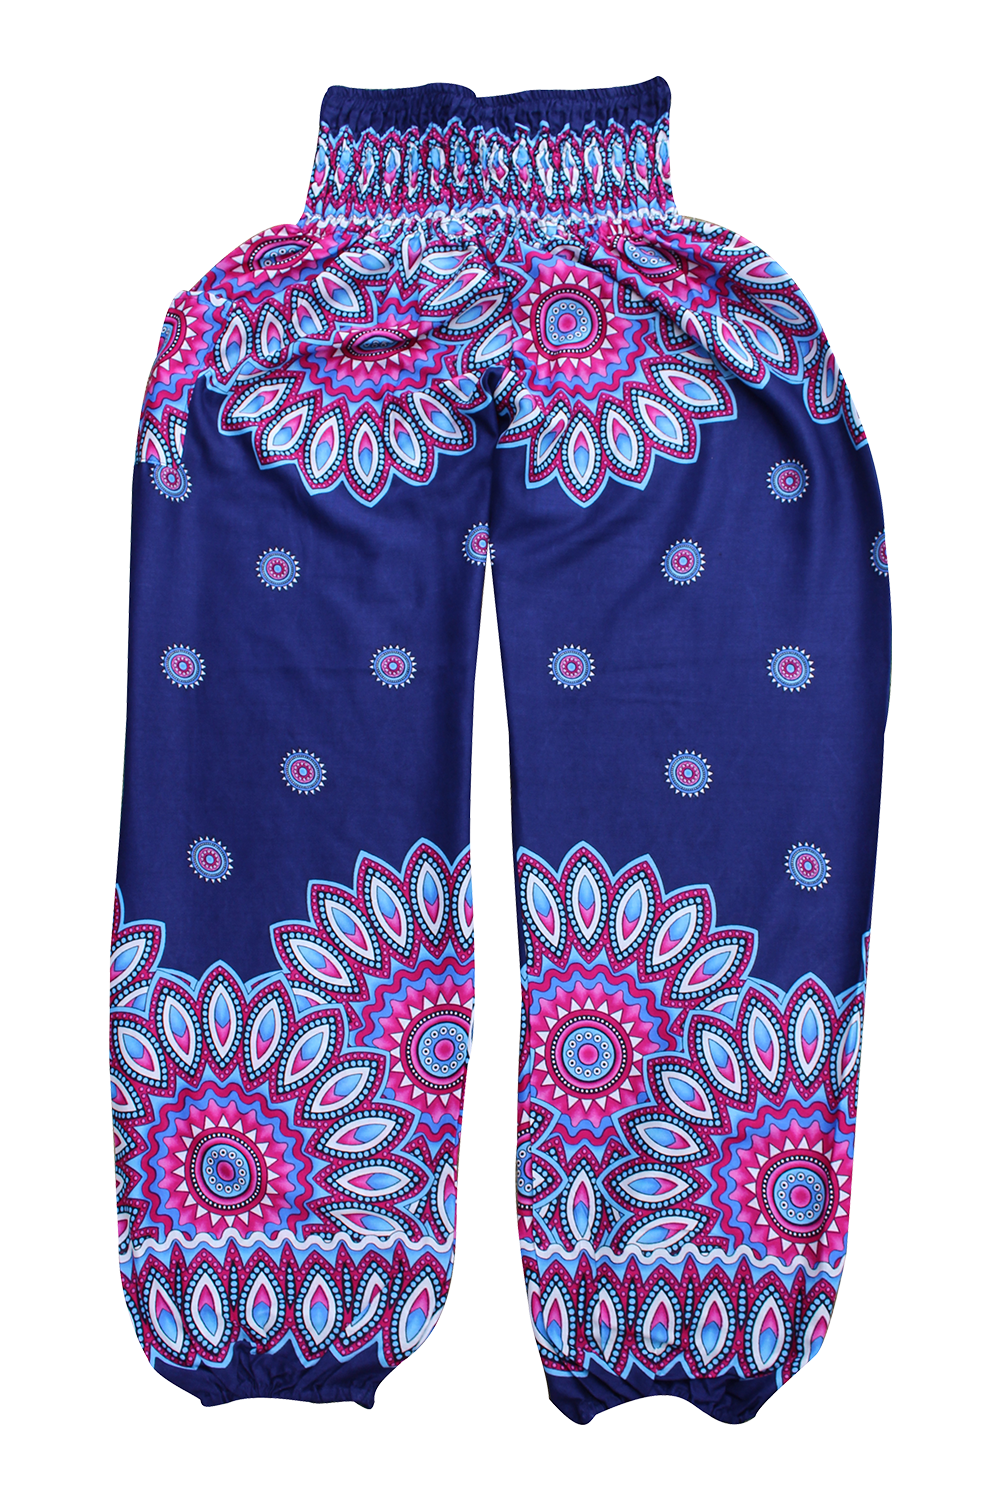 Purple Floral Harem Pants